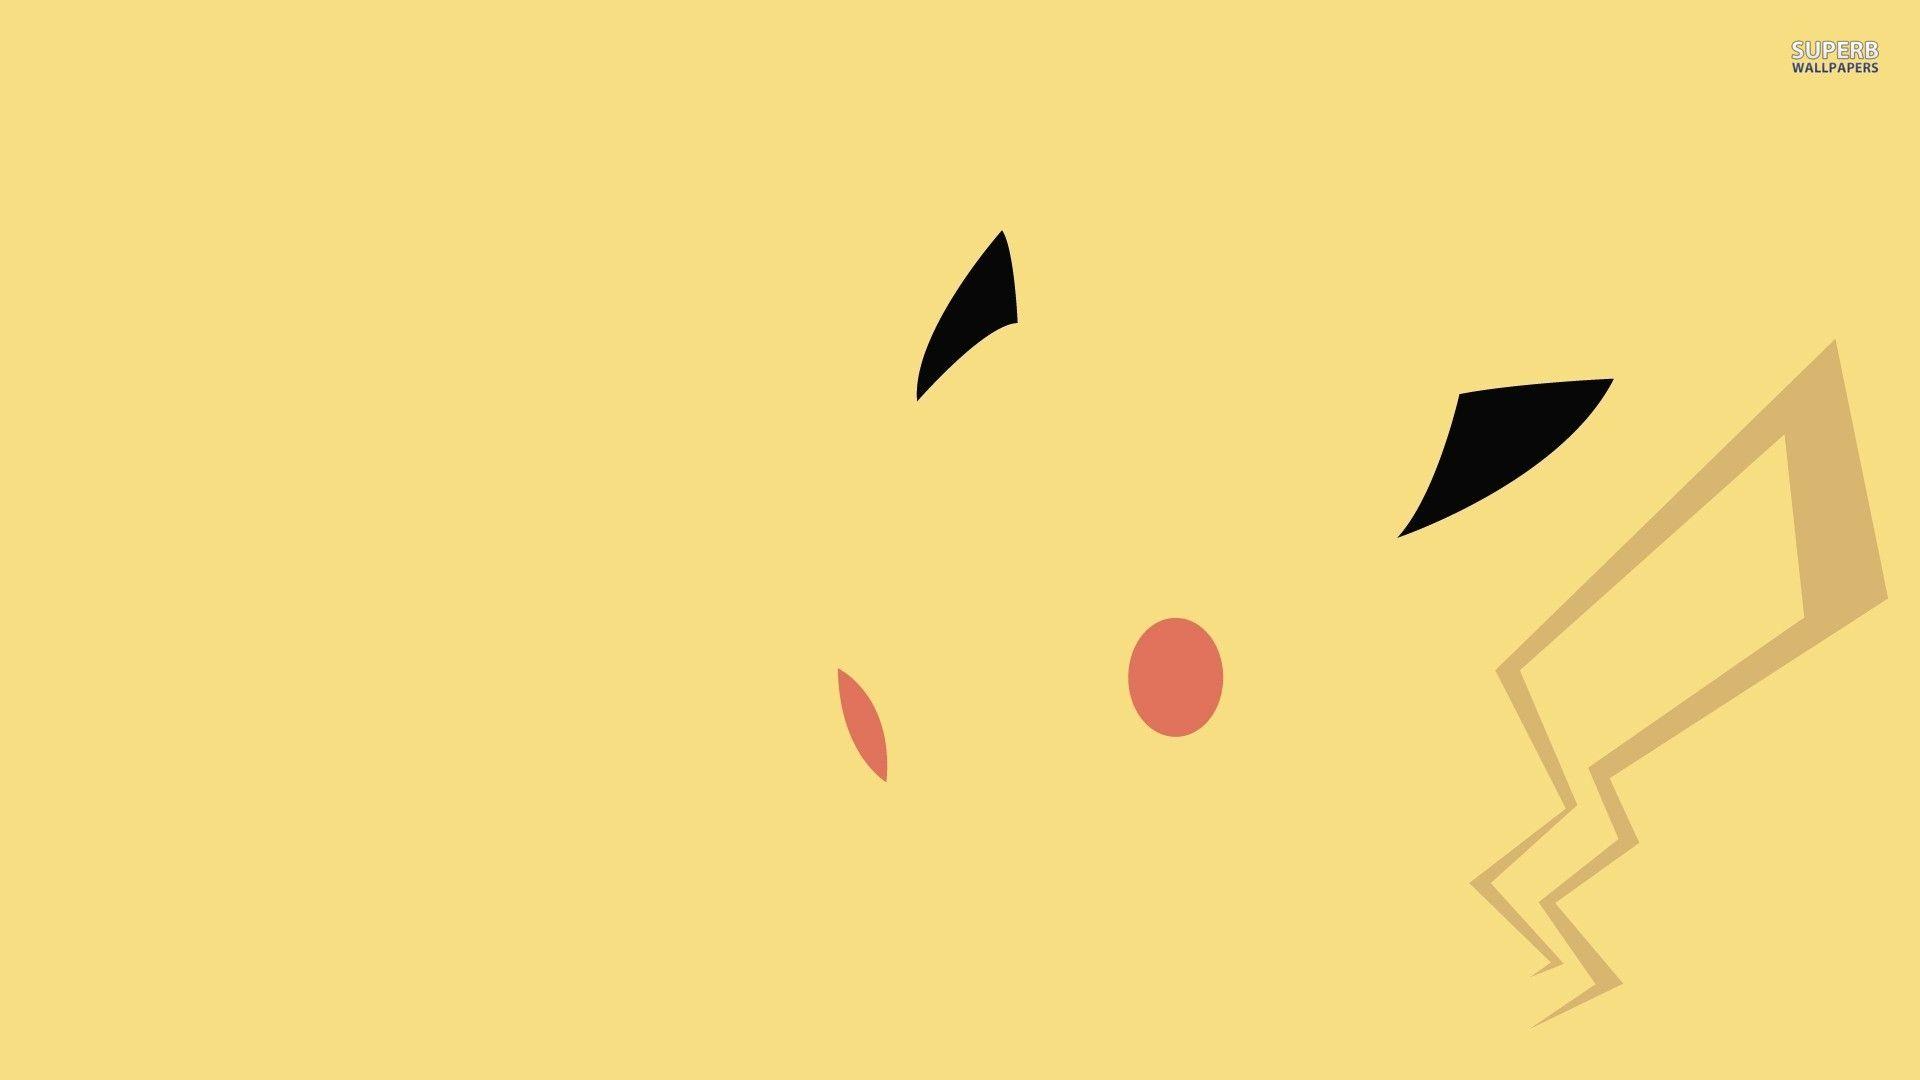 Pikachu Pokemon 24480 1920x